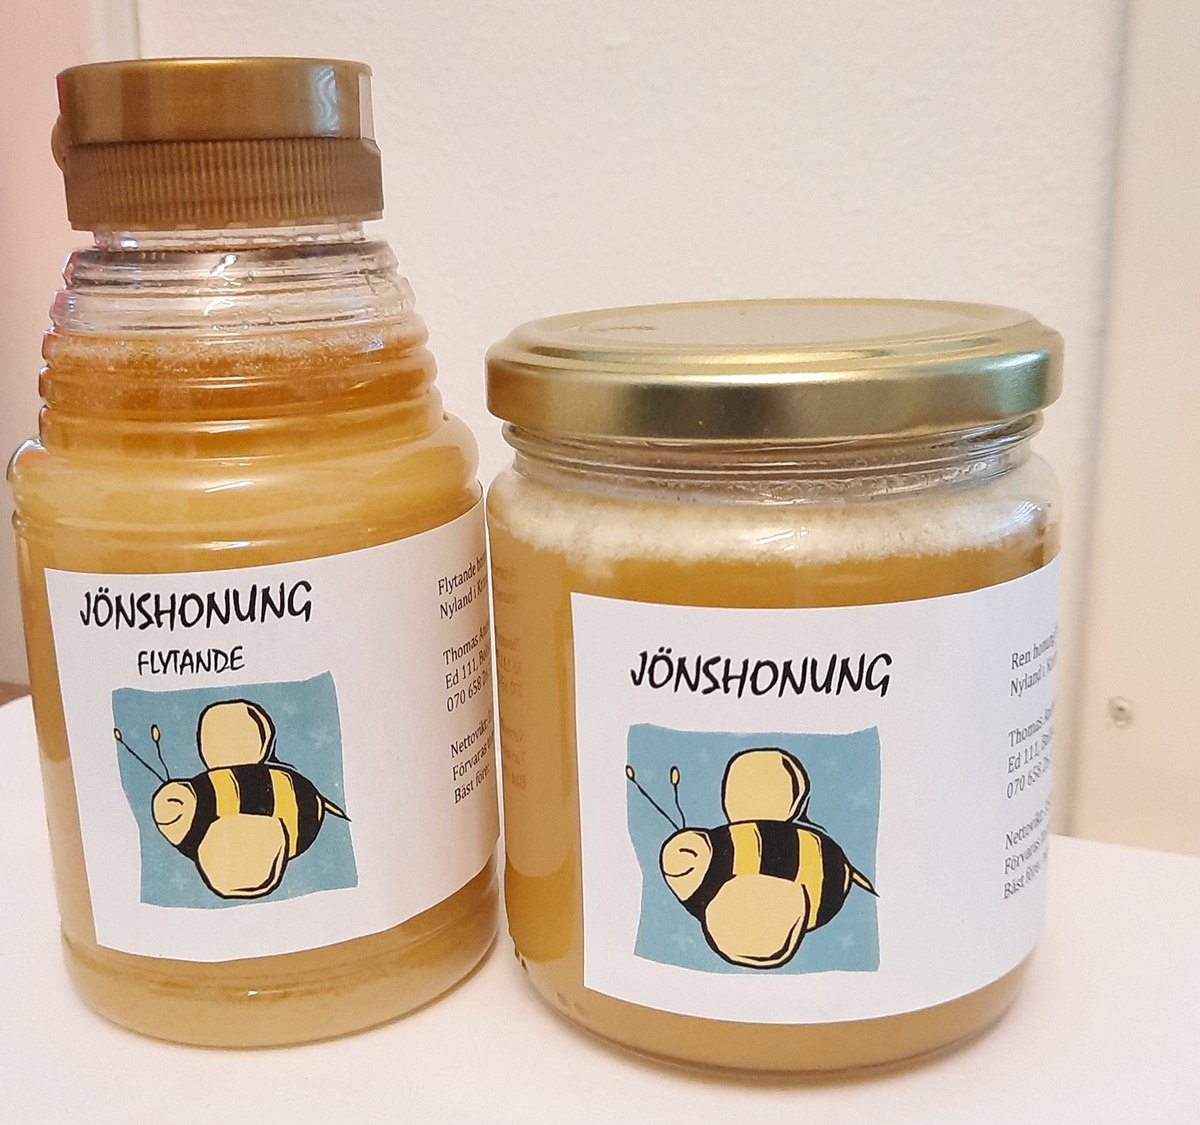 En flaska och en glasburk med honung från Jönshonung.